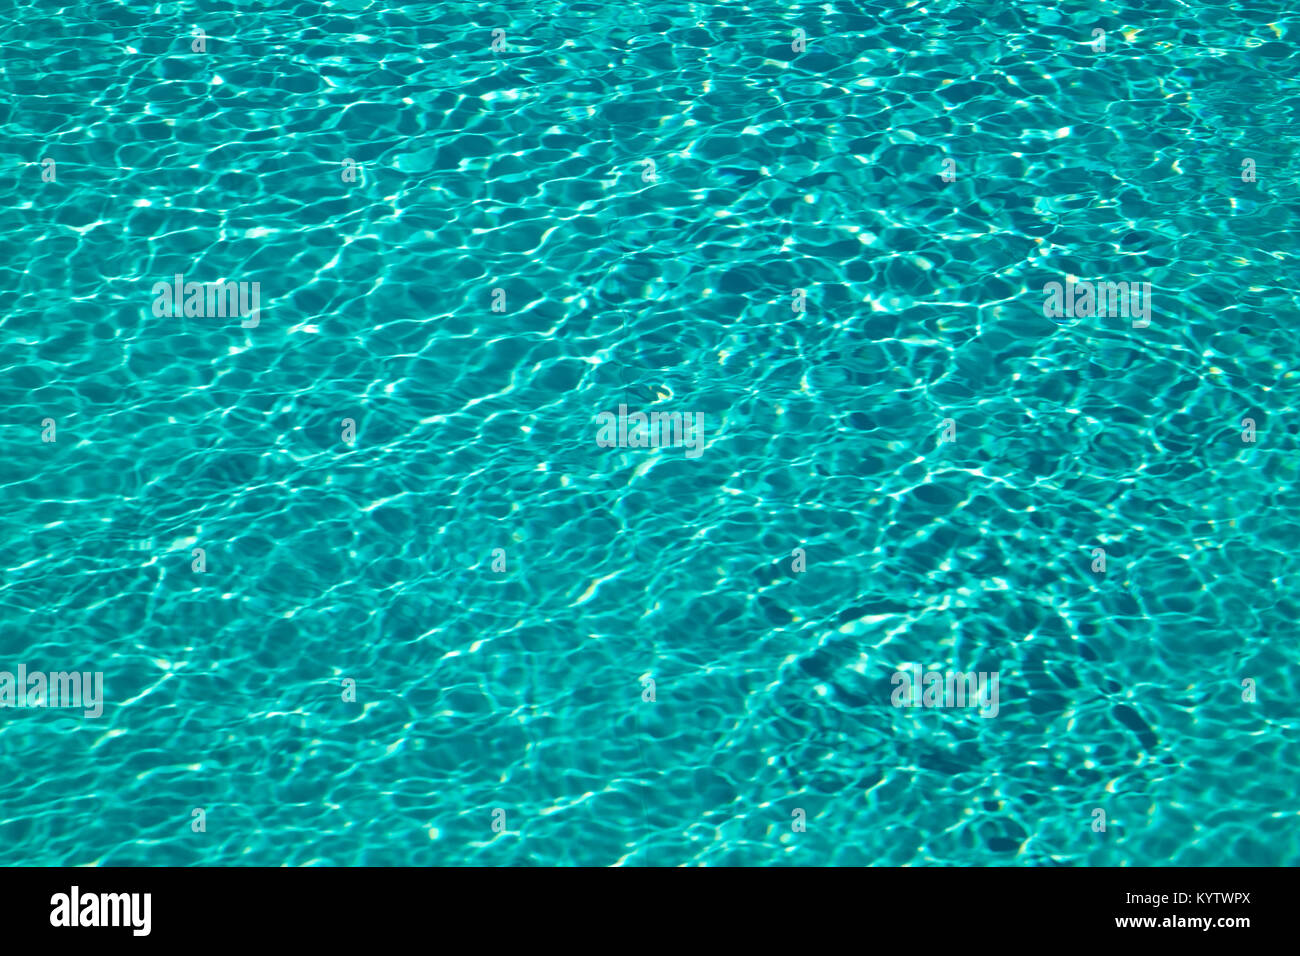 Testurizzato effetto di luce sulla superficie delle increspature di una piscina all'aperto Foto Stock